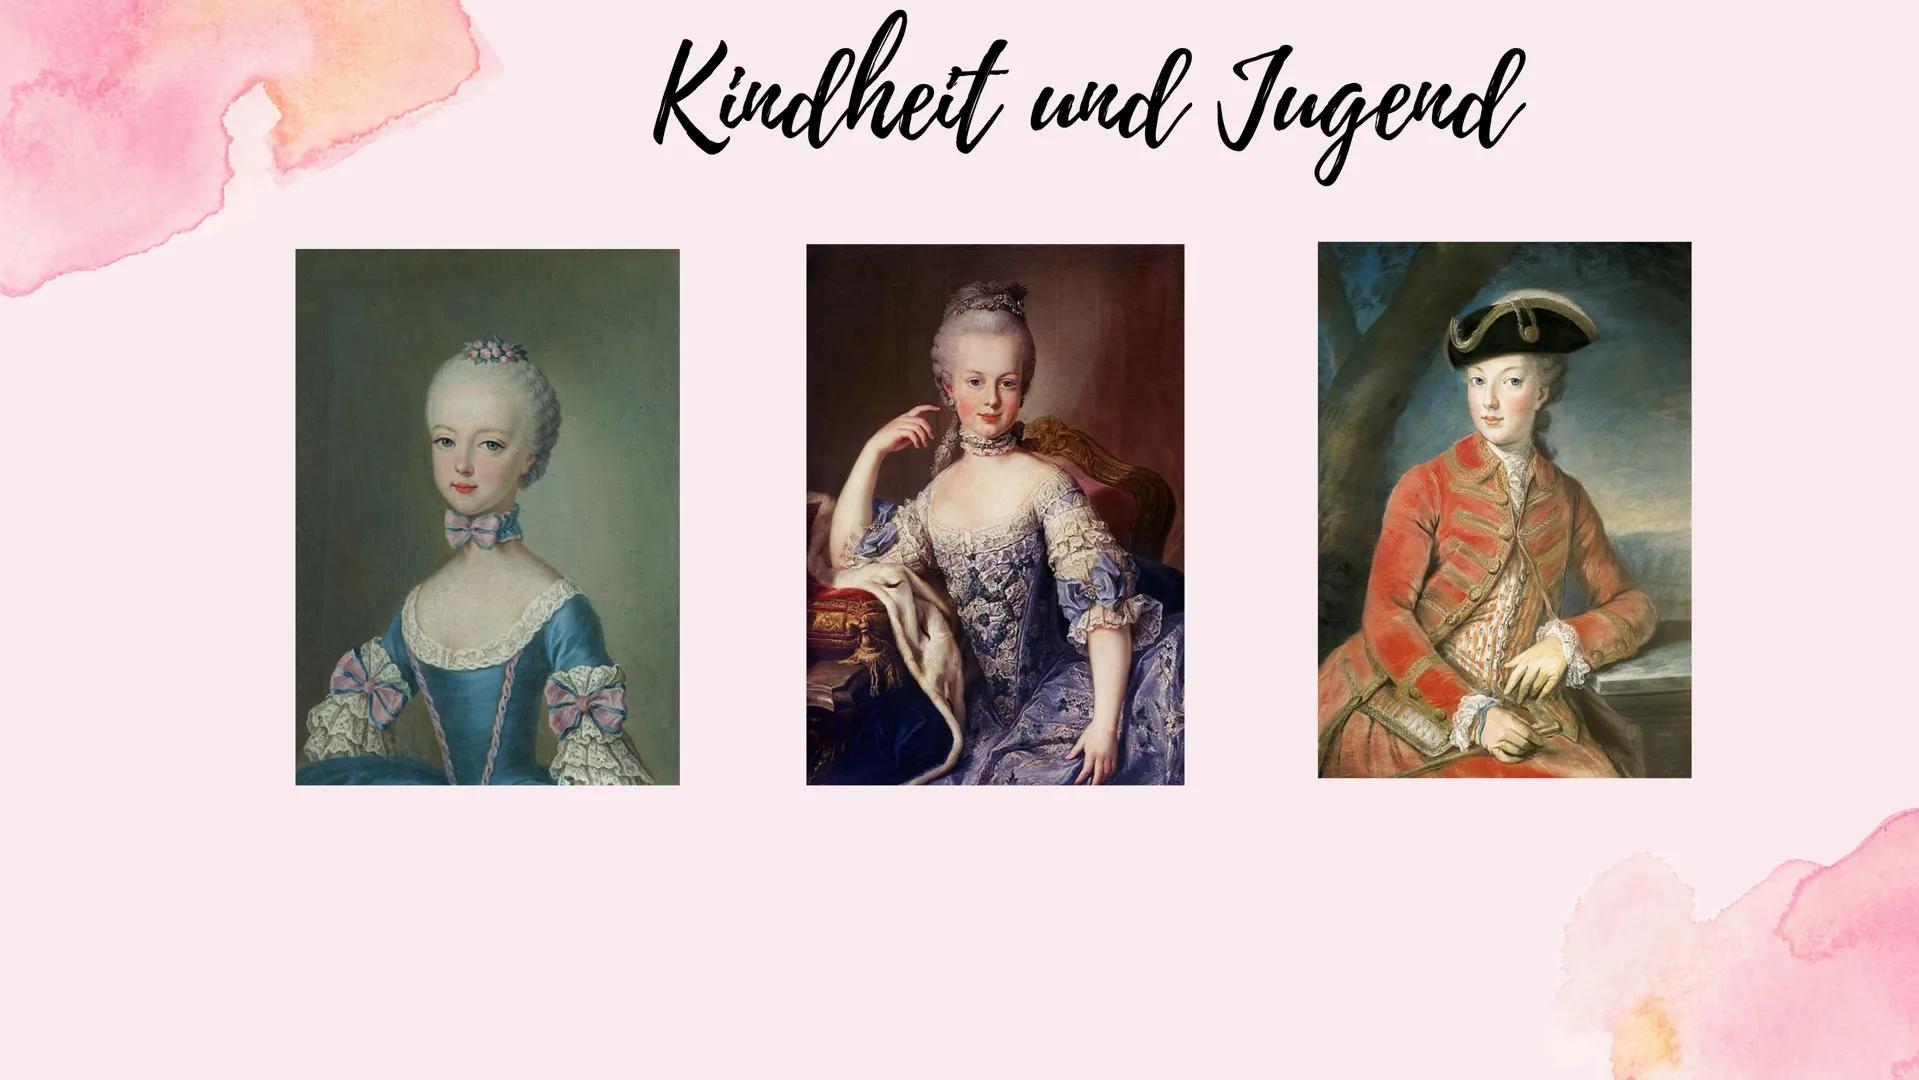 Marie
Antoinette Themenfragen
1.) Wer ist die Familie von Marie Antoinette ?
2.) Wie verlief ihre Kindheit und Jugend ?
3.) Marie Antoinette